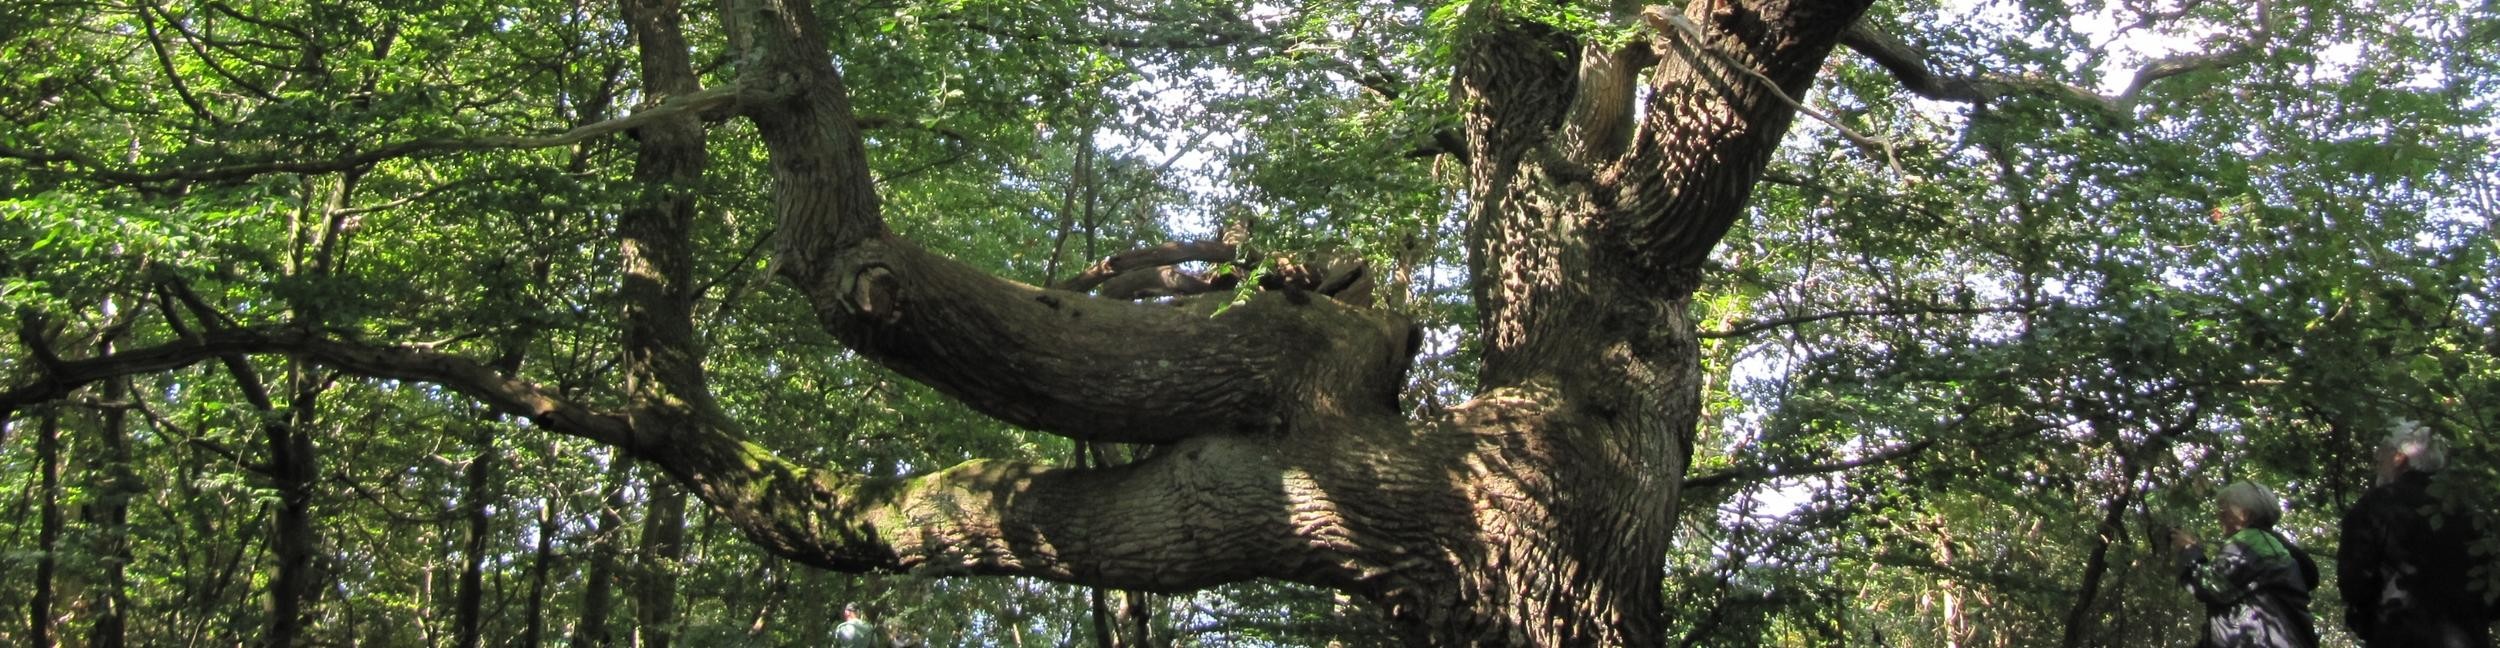 Chêne pédonculé dans les plaines alluviales du Rhin